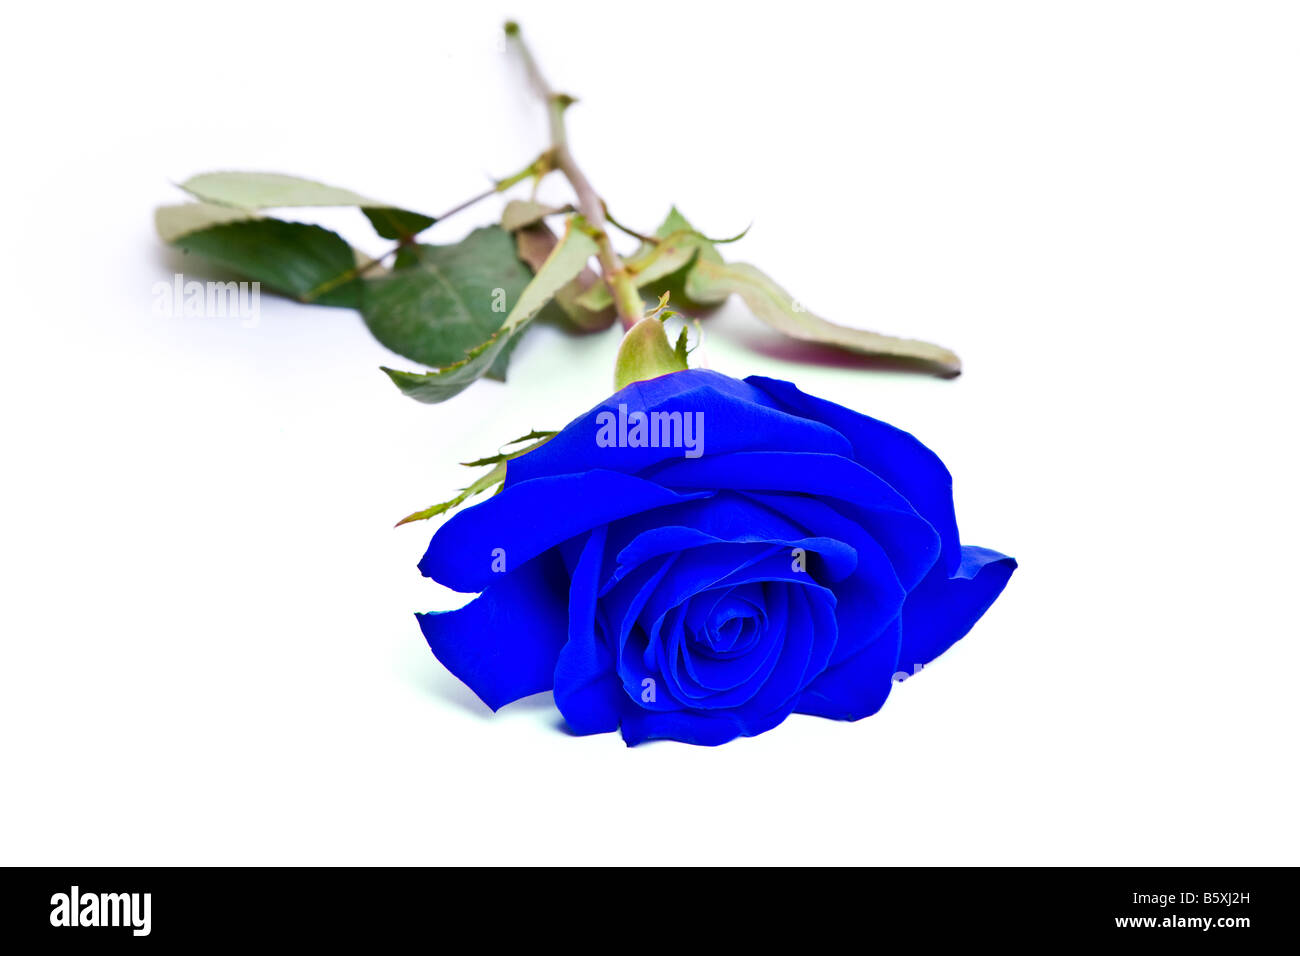 Rosa blu immagini e fotografie stock ad alta risoluzione - Alamy